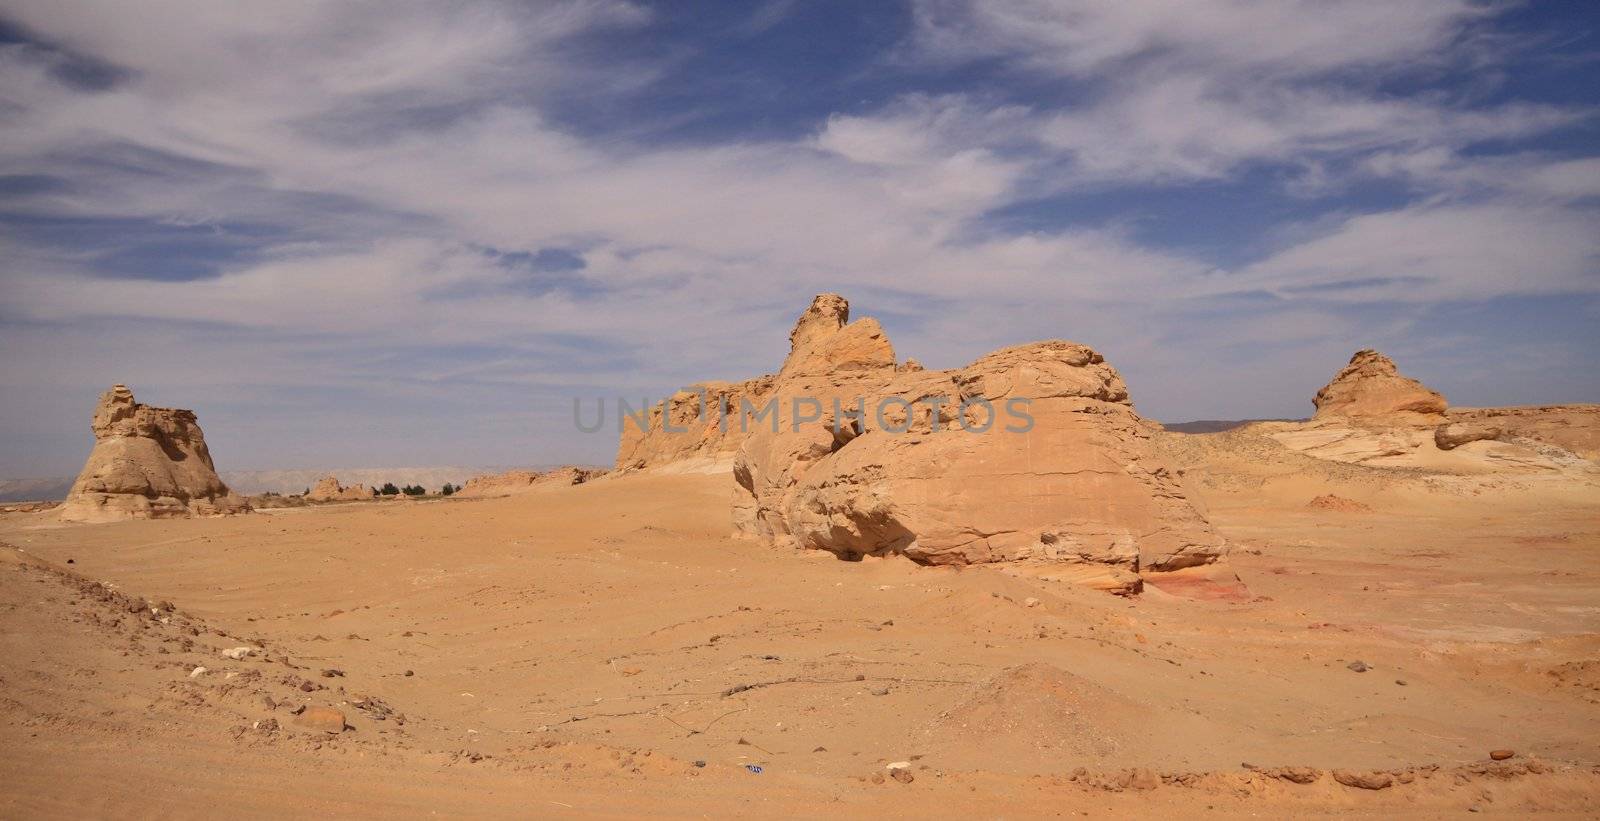 Lybian desert in Egypt by jnerad